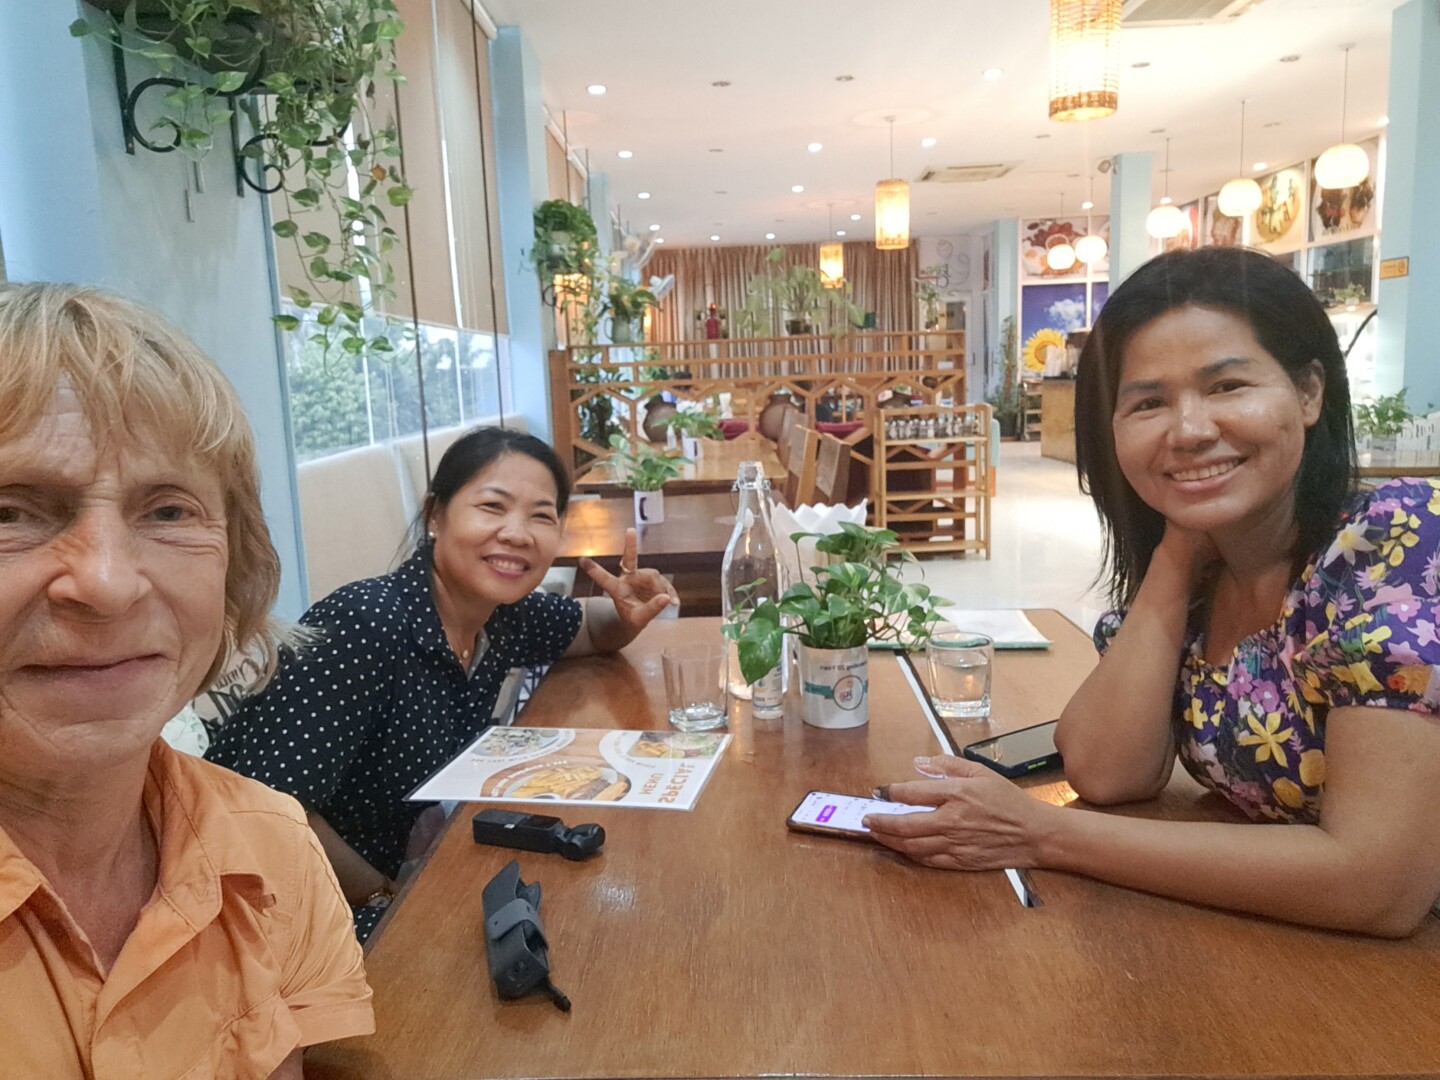 Kolme naista, yksi suomalainen ja kaksi kambodzalaista, hymyilevät yhteiskuvassa kahvilan pöydän ääressä.